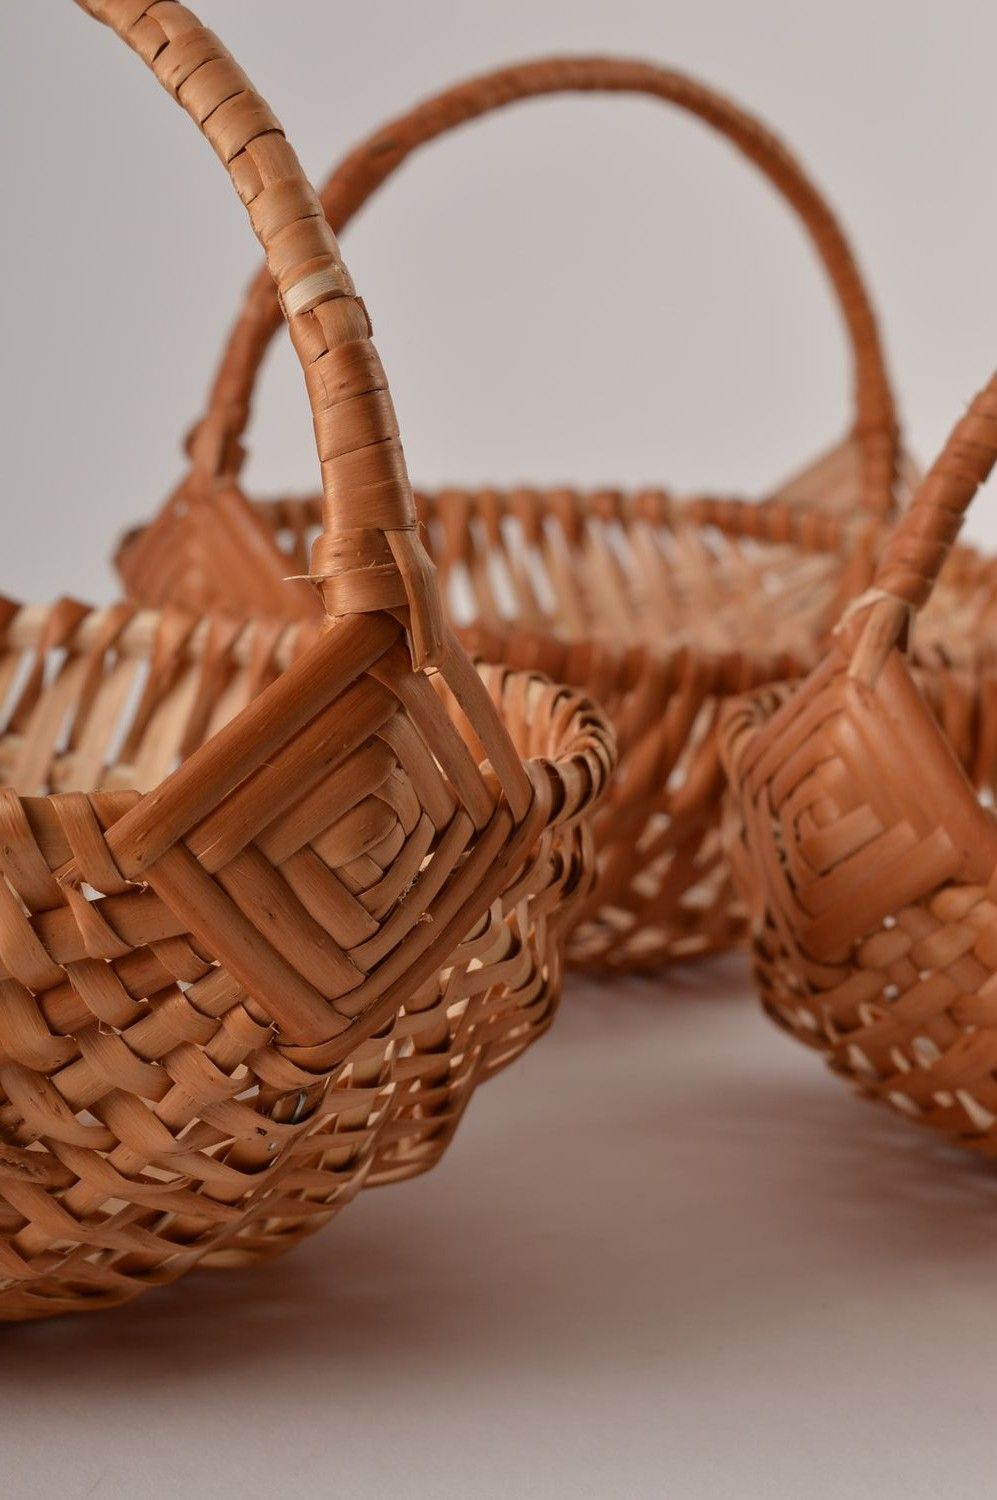 Juego de cestas decoradas hechas a mano elementos decorativos regalo original foto 6